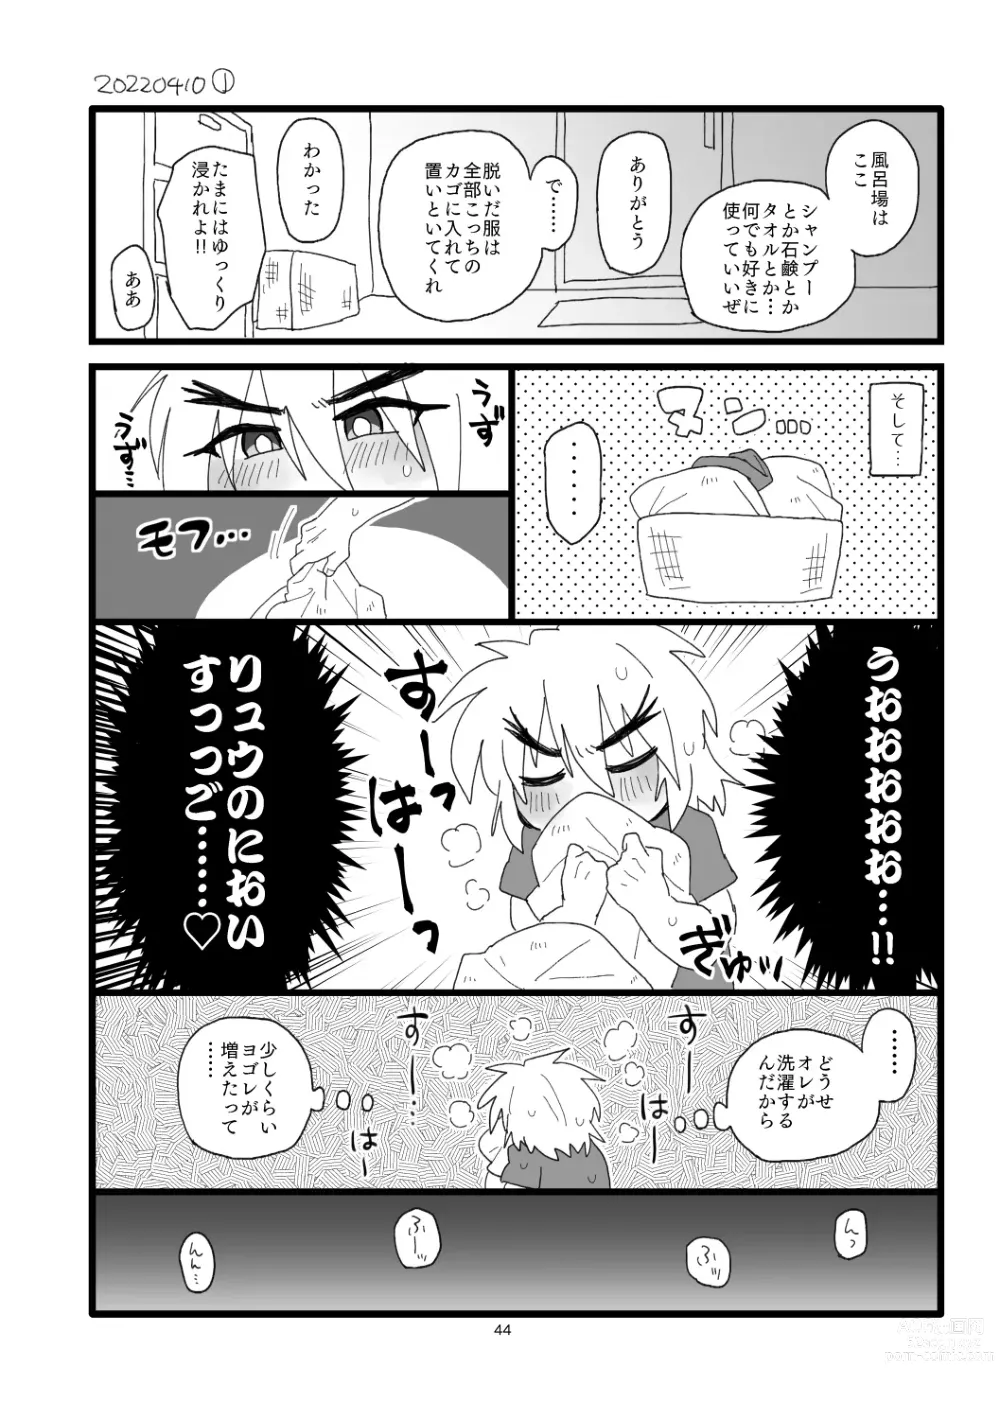 Page 43 of doujinshi Kobushi Kiss